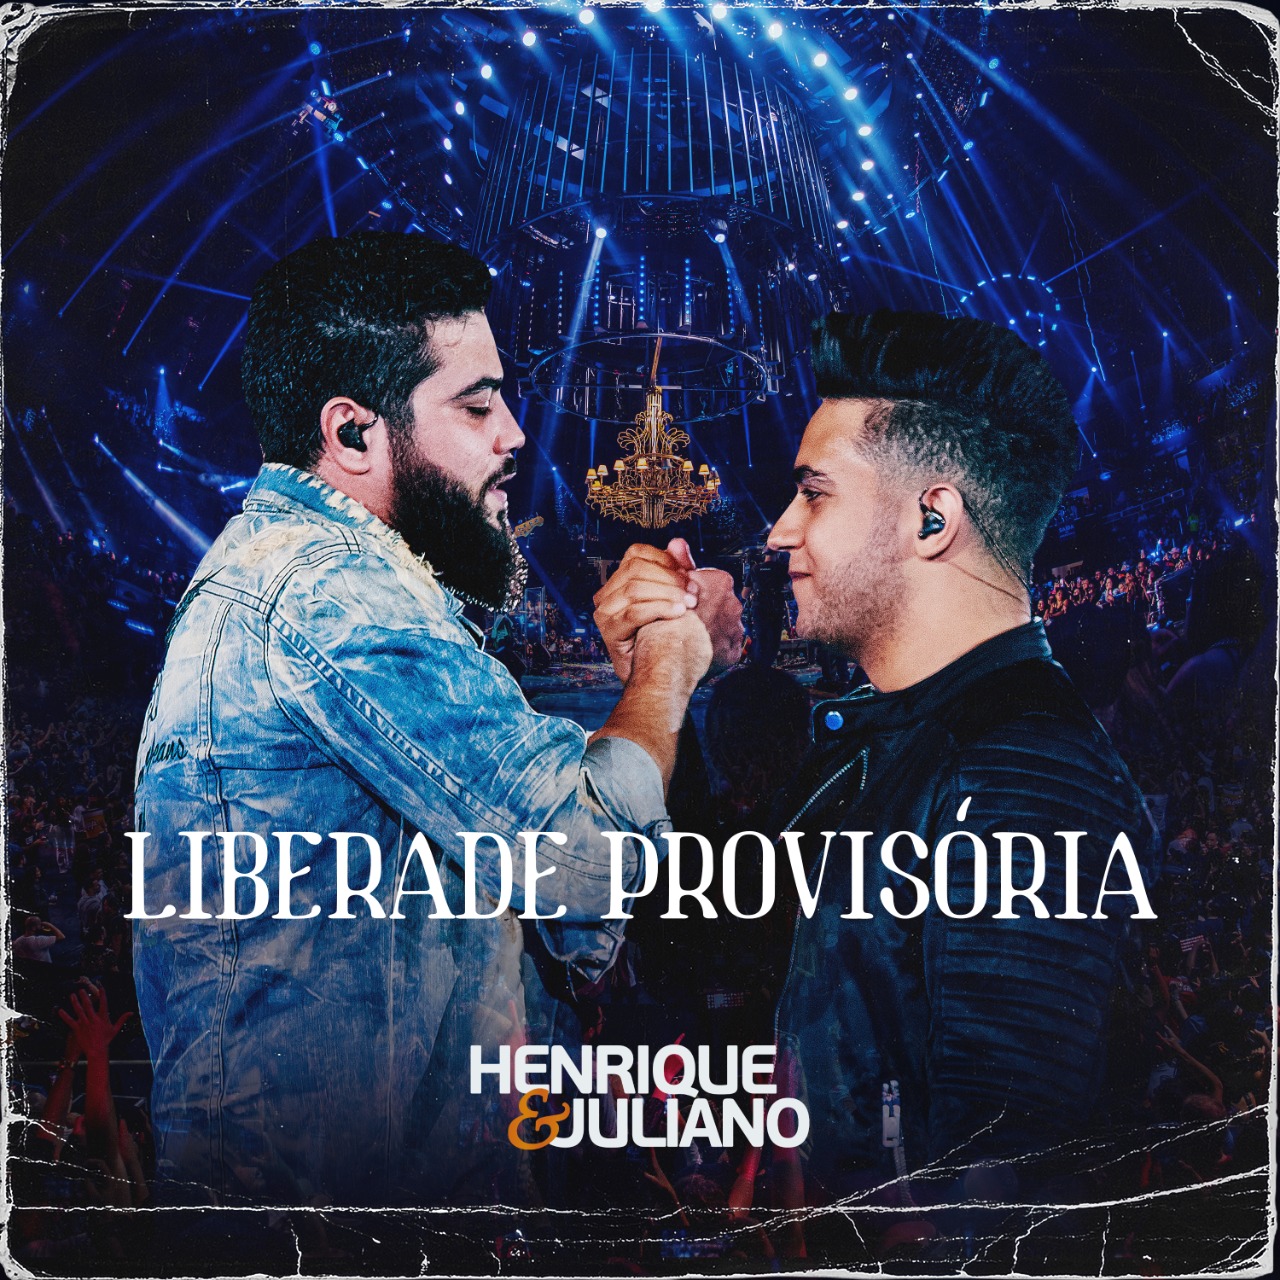 Recordistas em visualizações no YouTube, Henrique e Juliano lançam música inédita 41